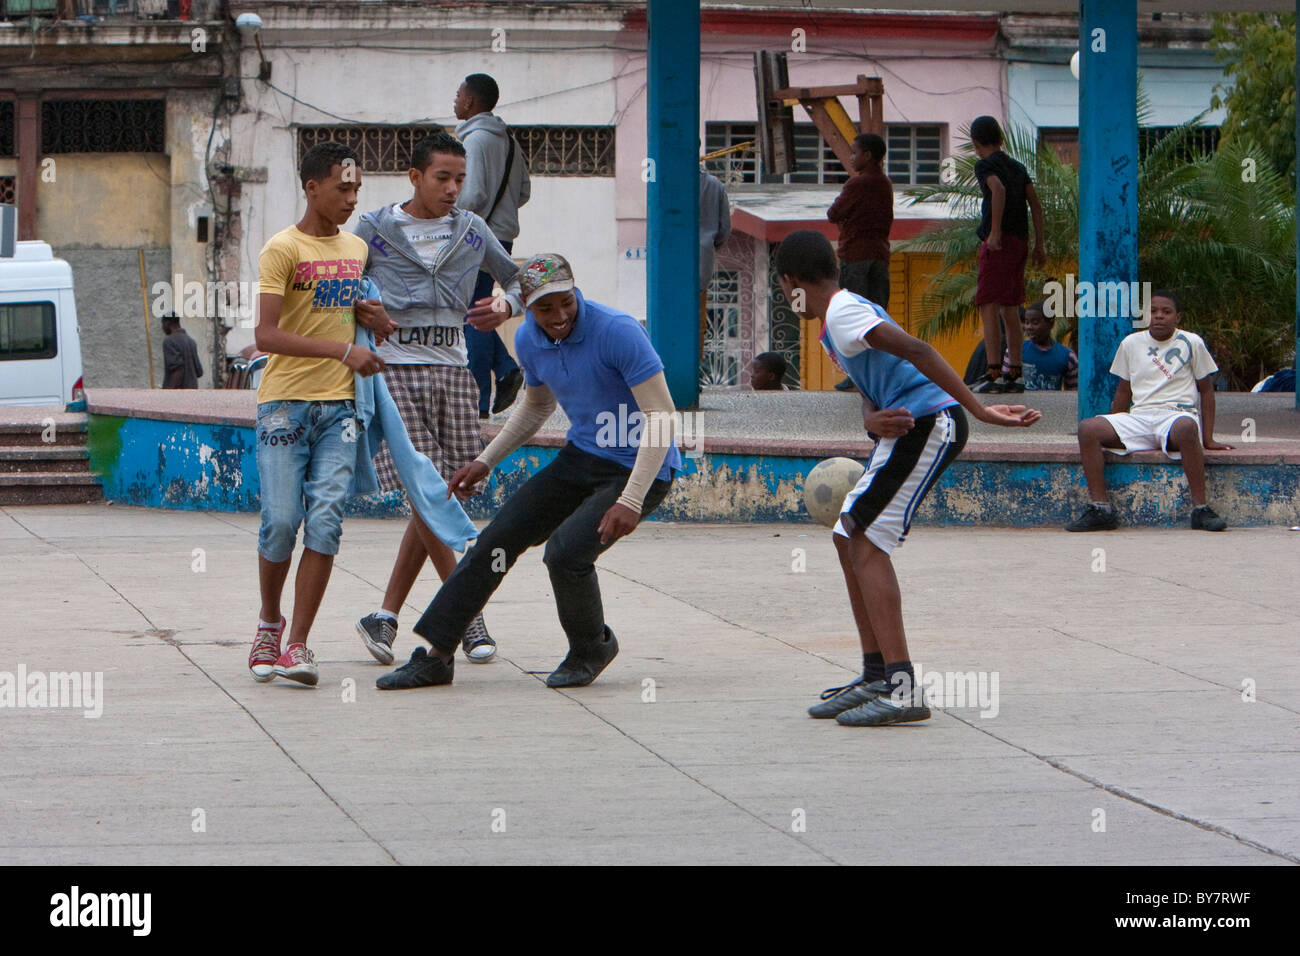 Cuba, La Havane. Les garçons jouent au soccer dans un parc public. Banque D'Images